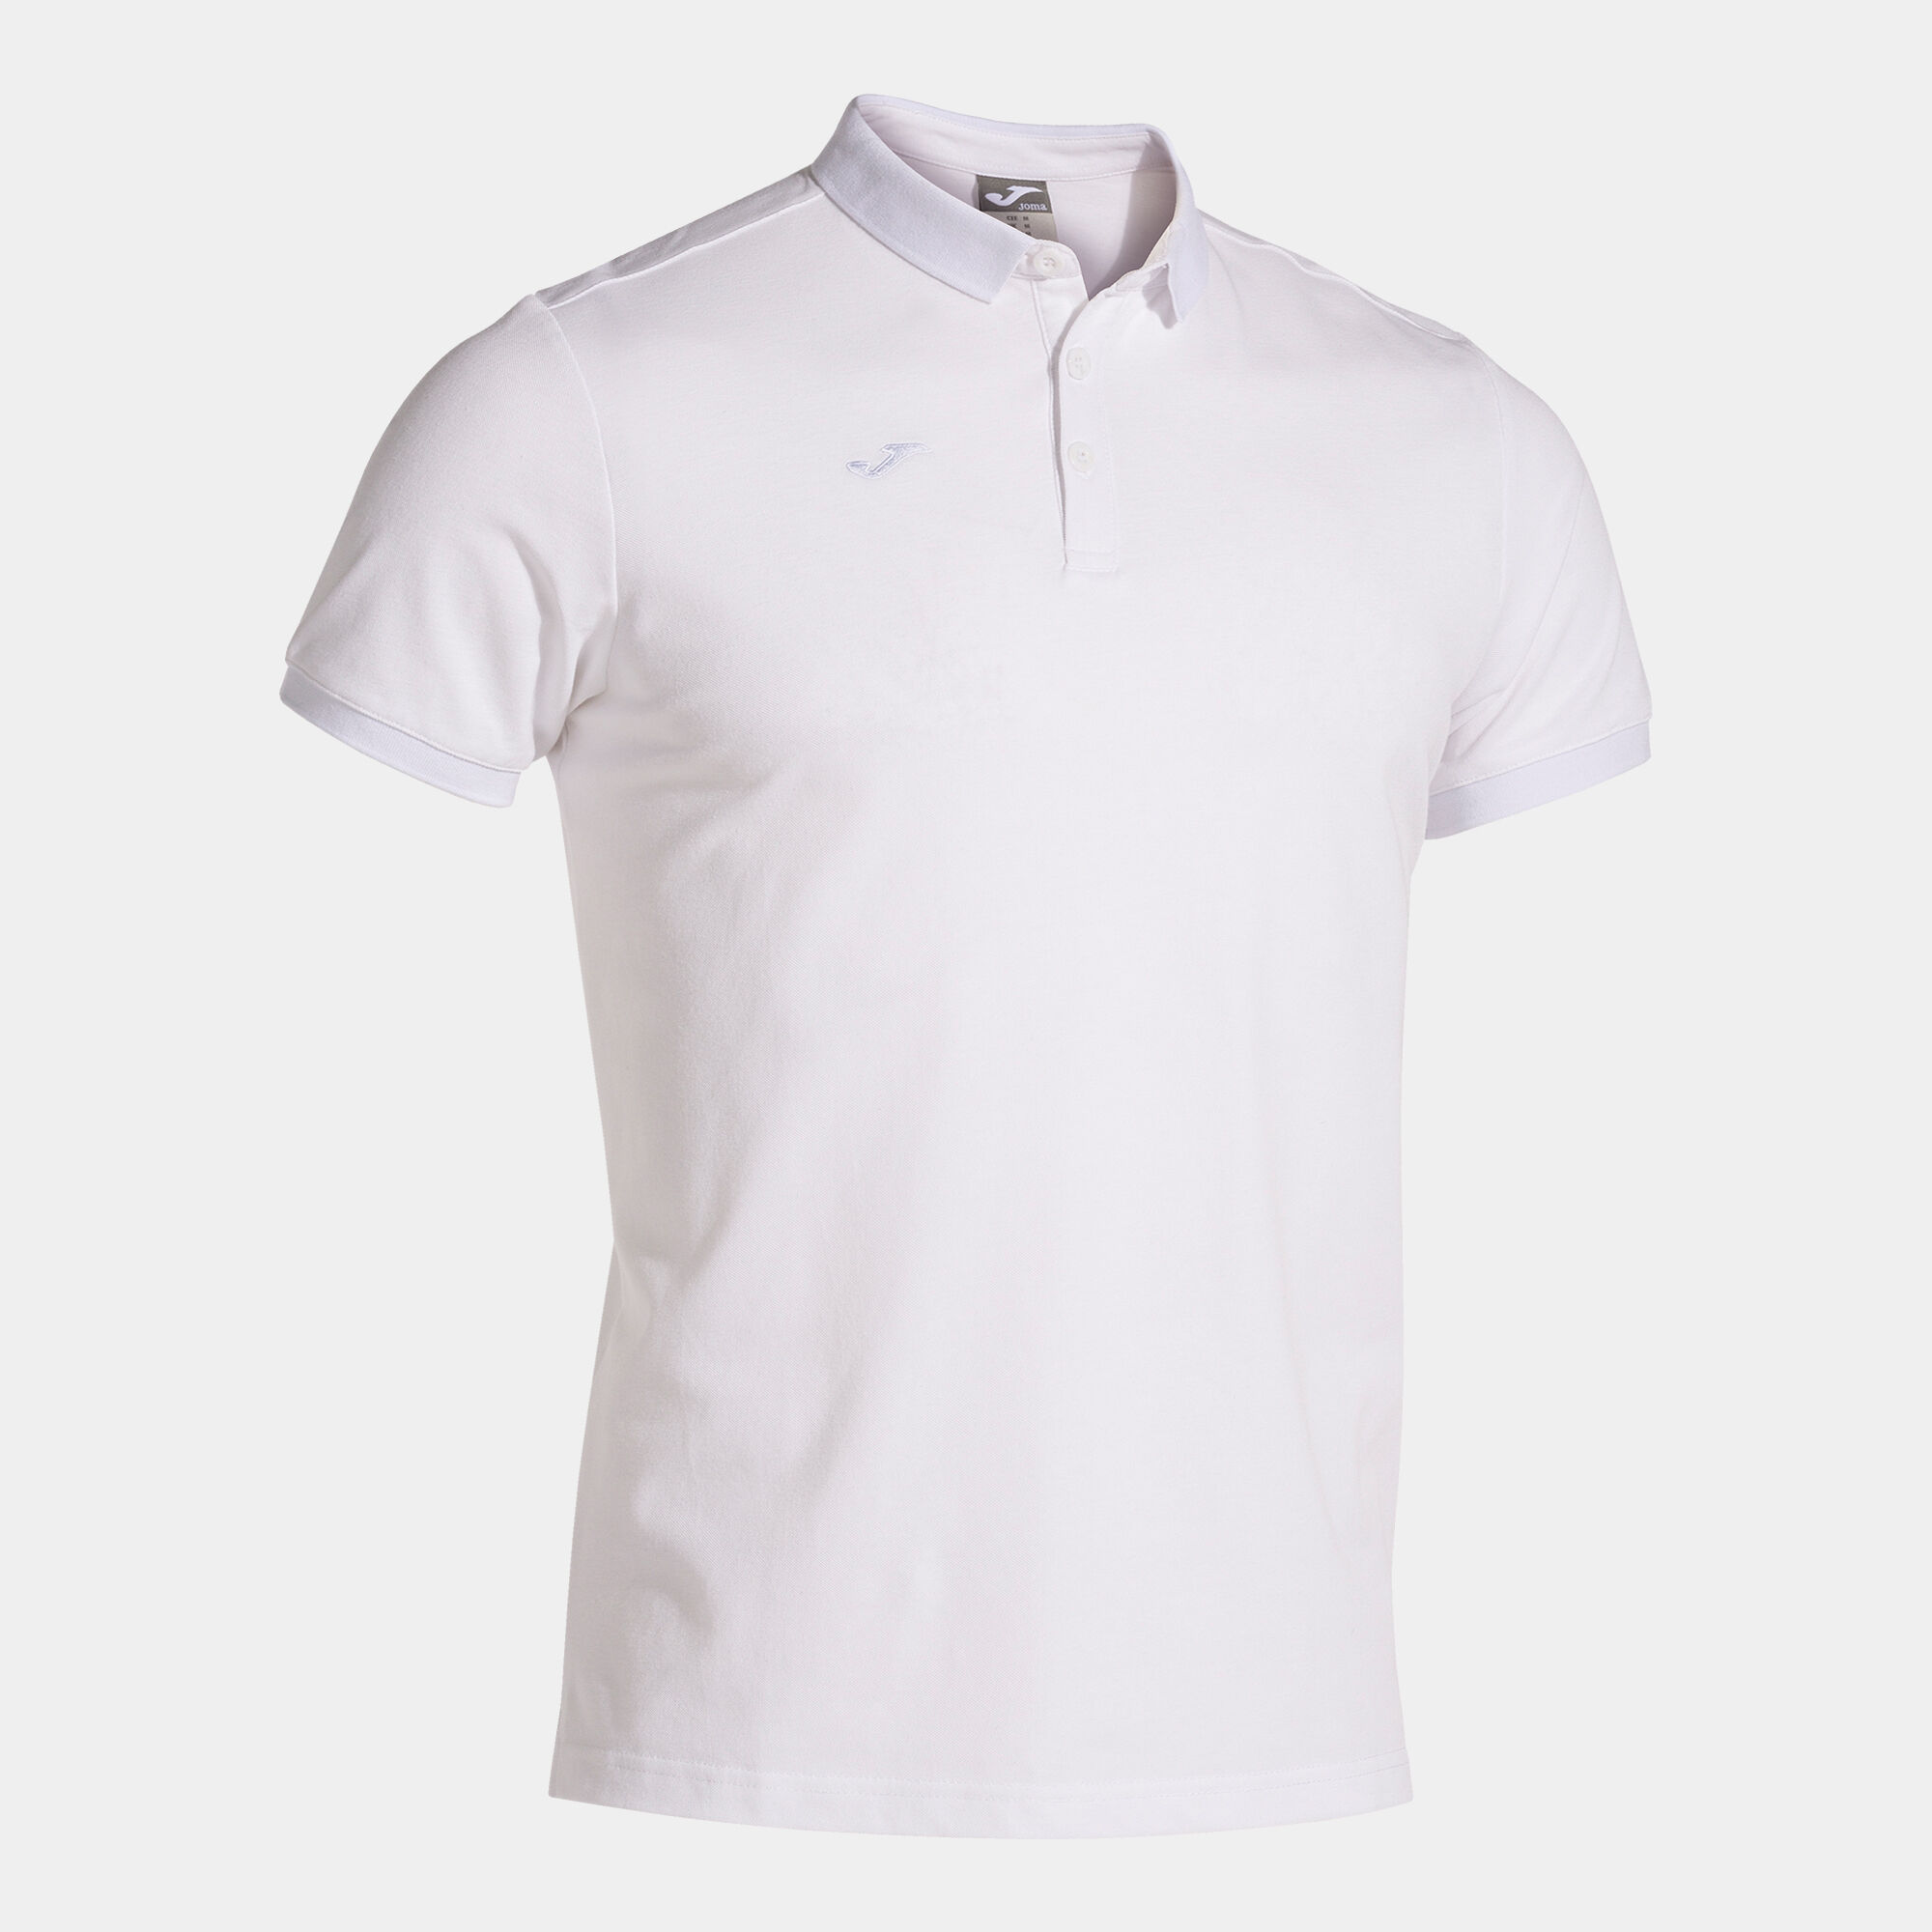 Polo shirt short-sleeve man Pasarela III white